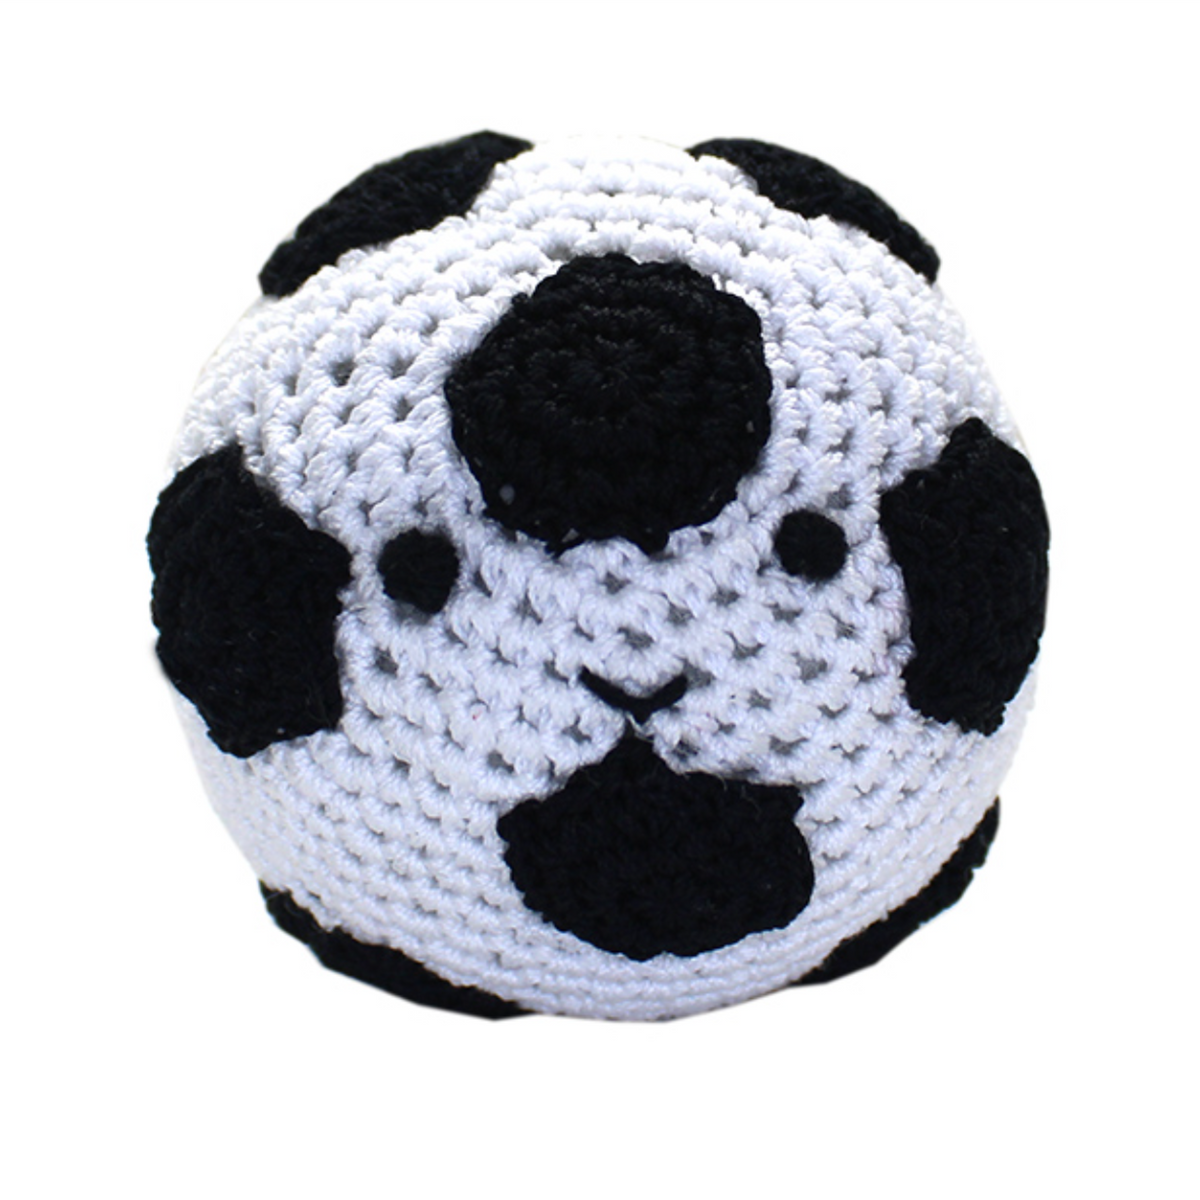 Skipper the Soccer Ball Handmade Knit Knack Toys